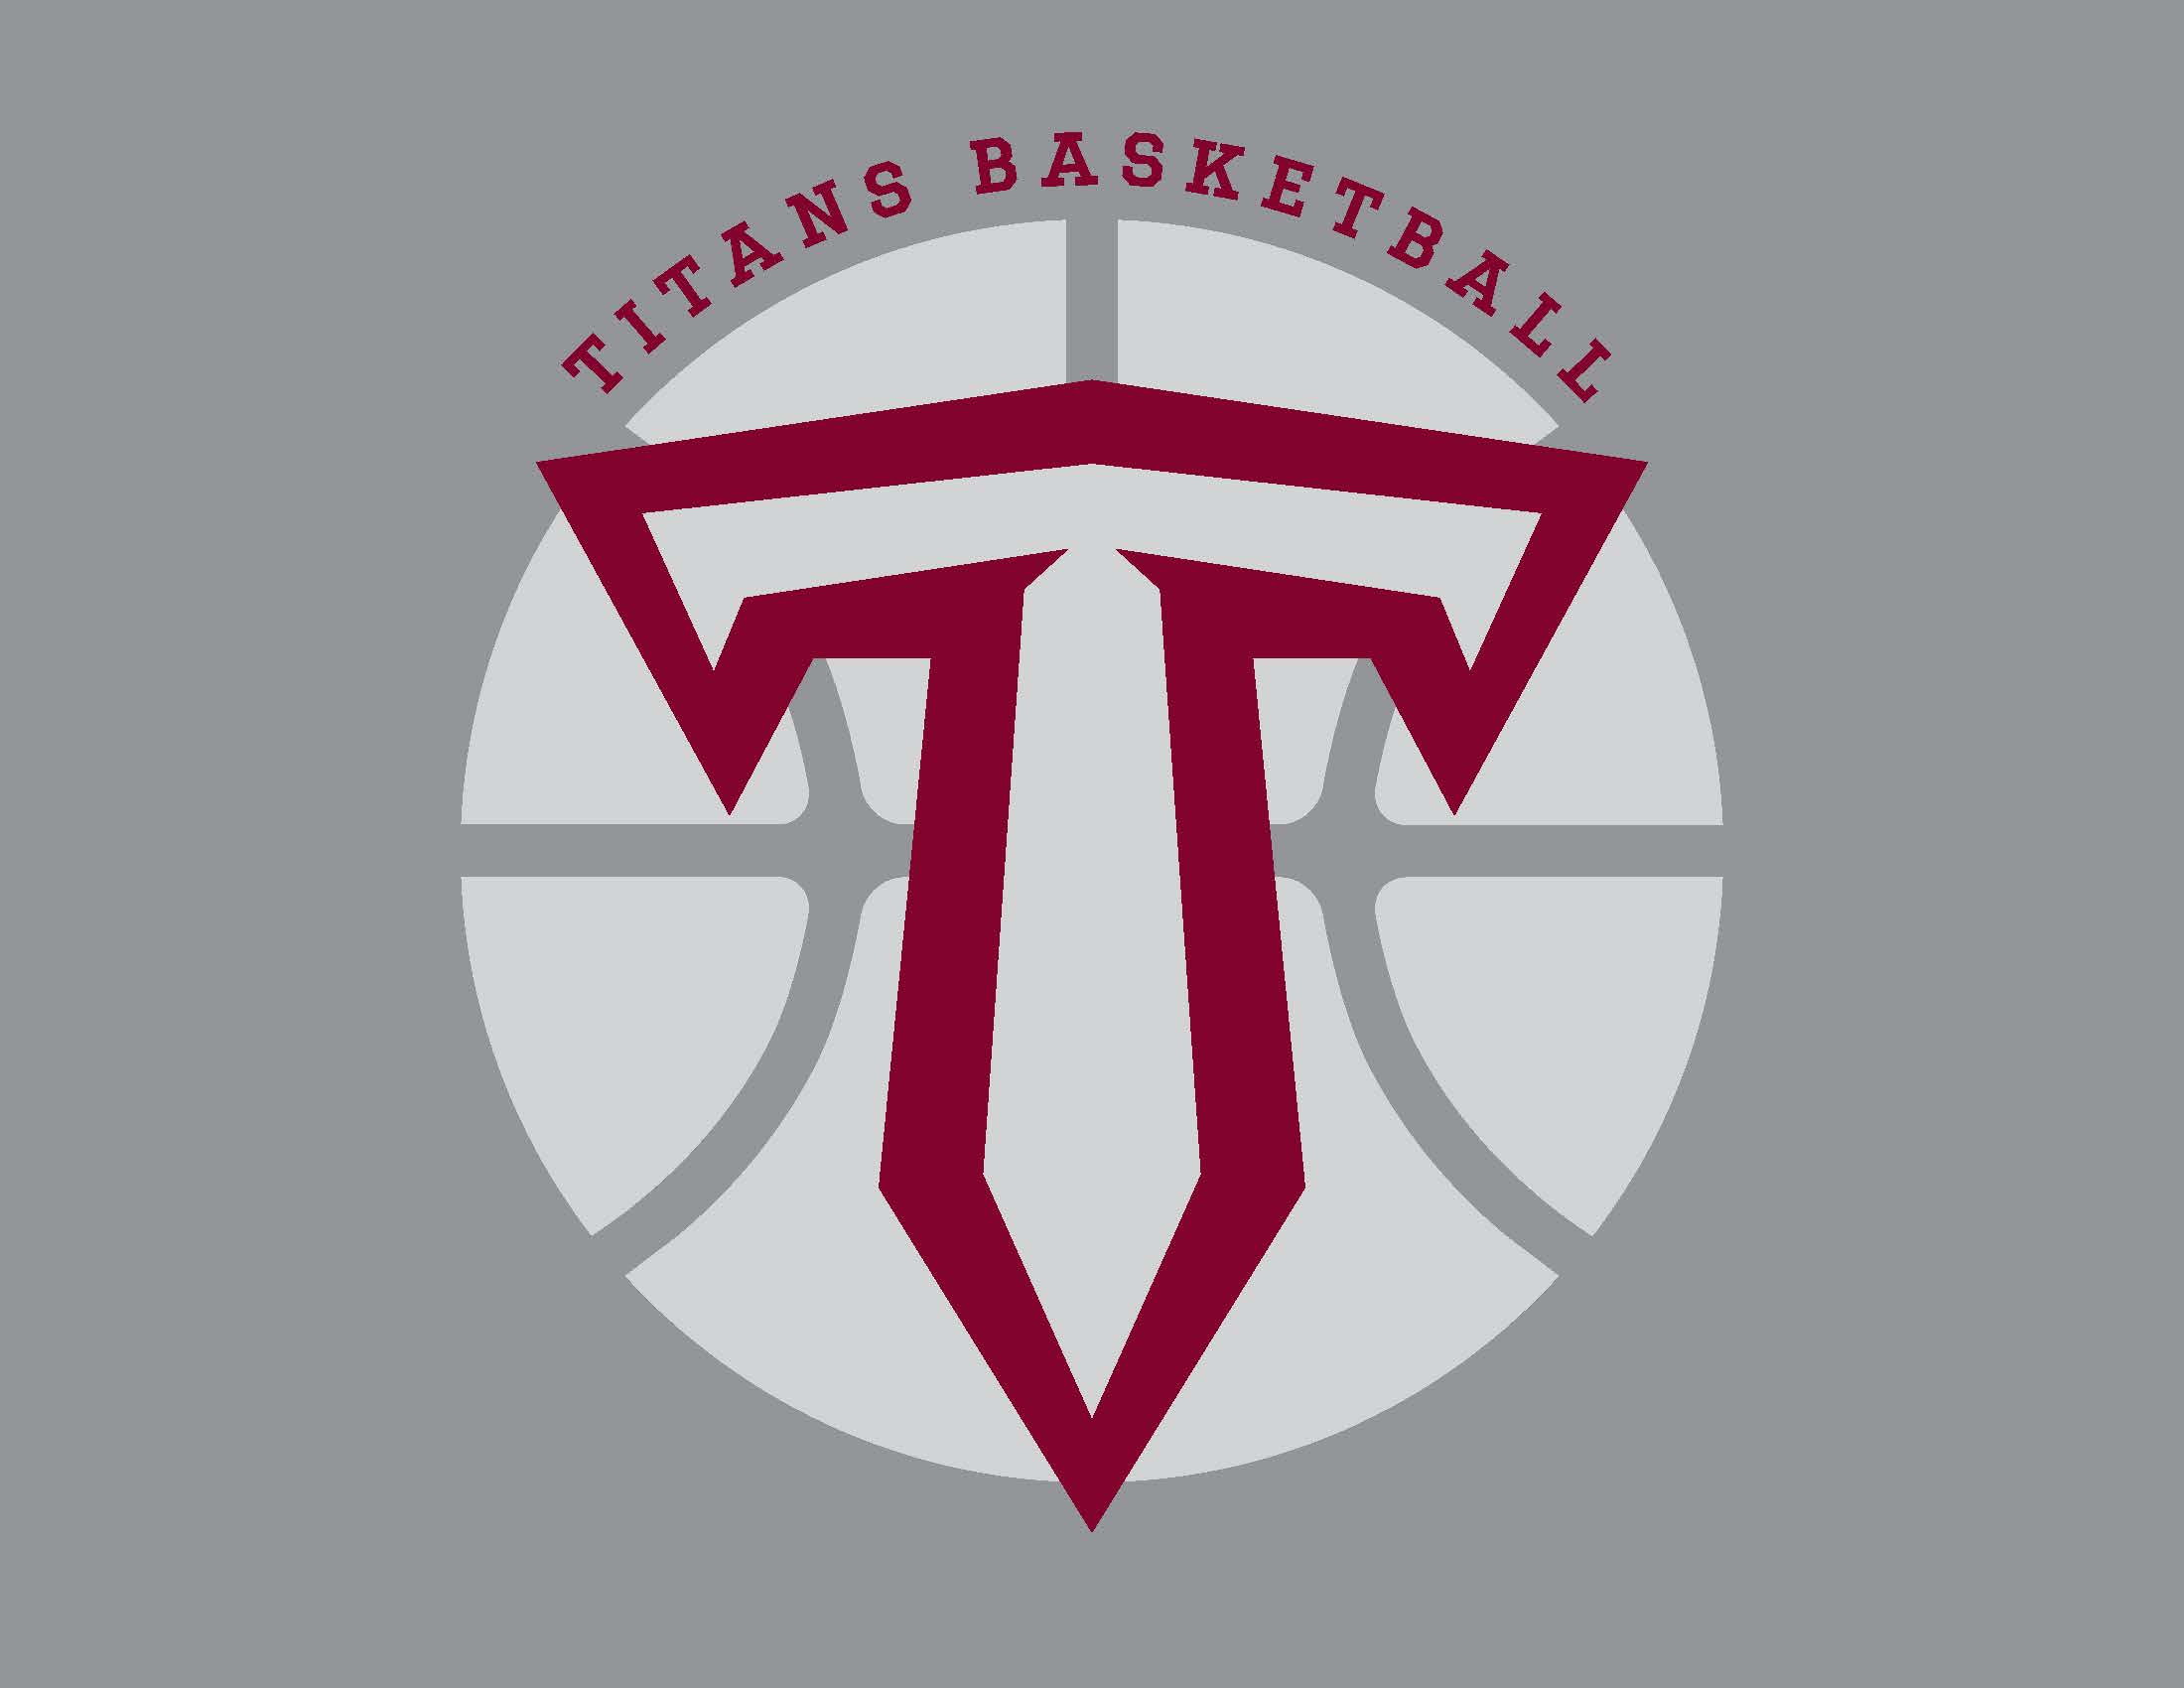 titans basketball logo